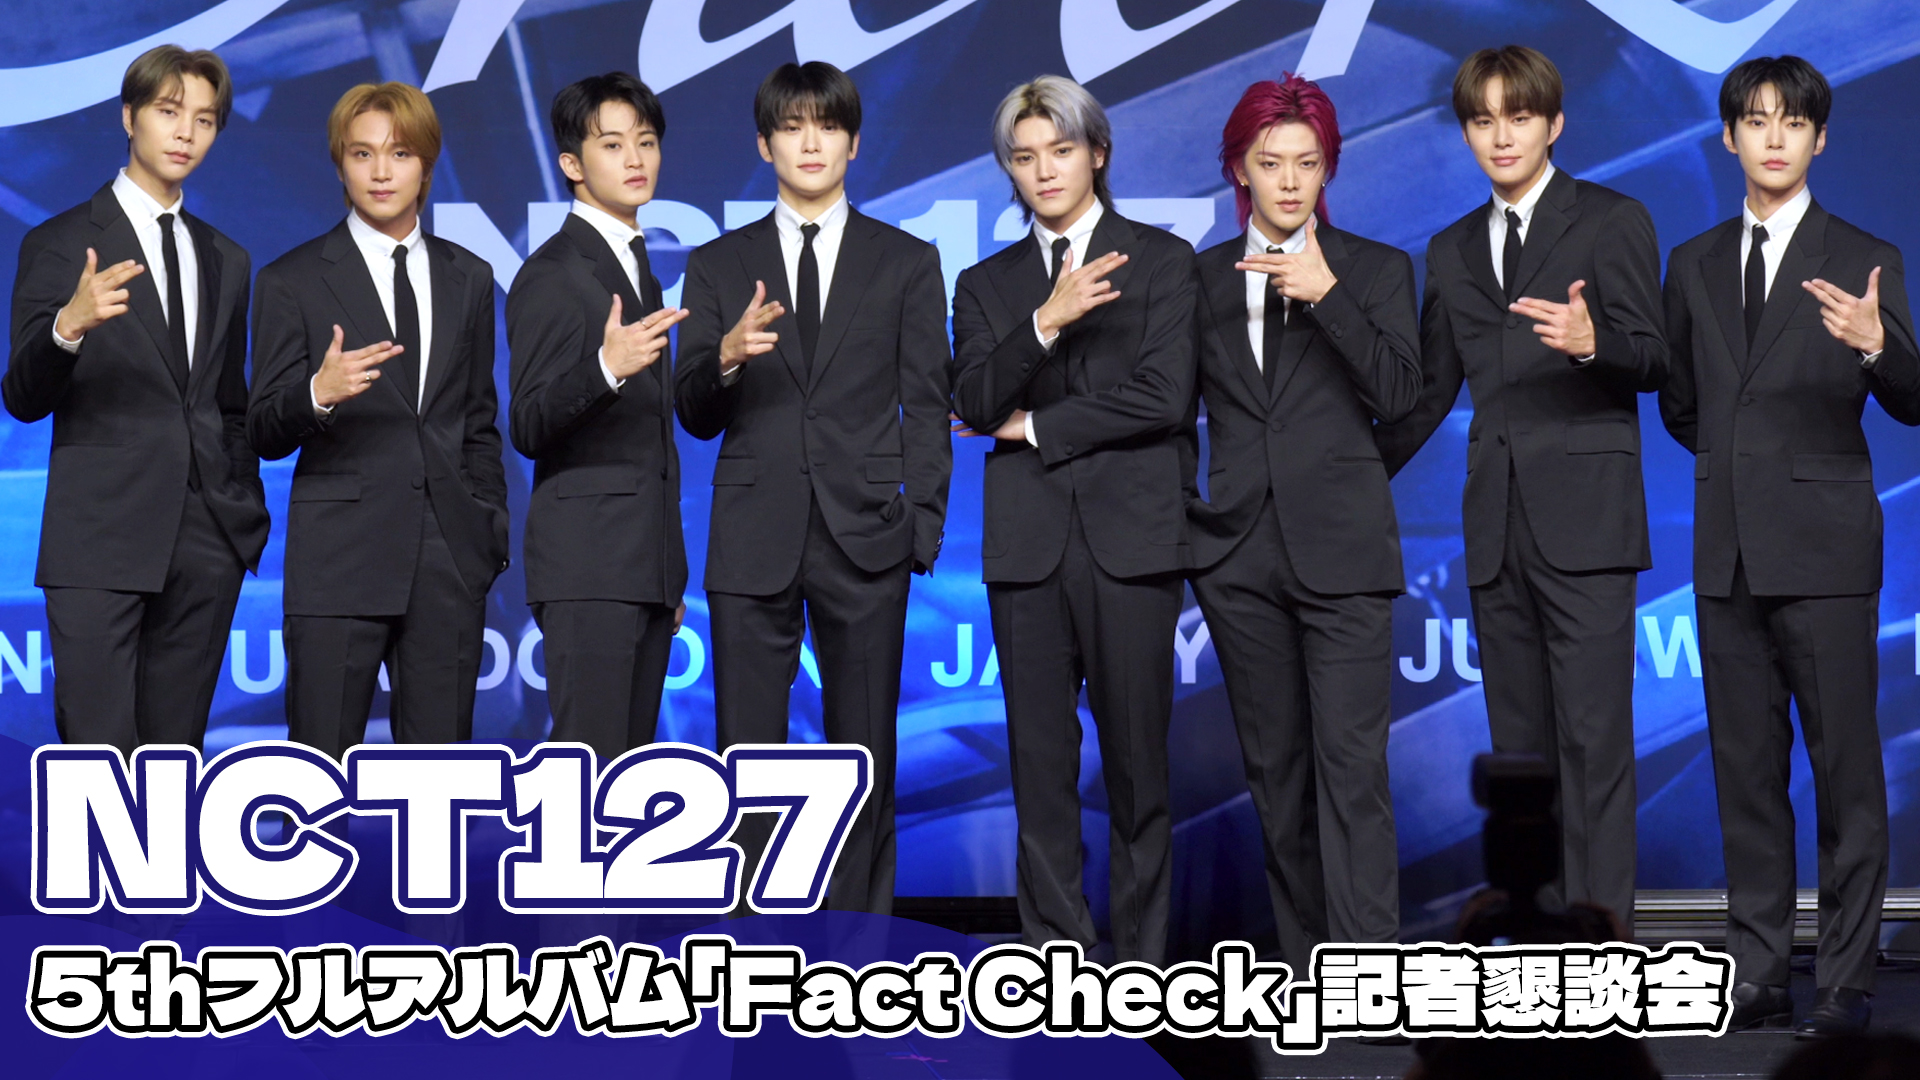 【動画】NCT127、5thフルアルバム「Fact Check」記者懇談会